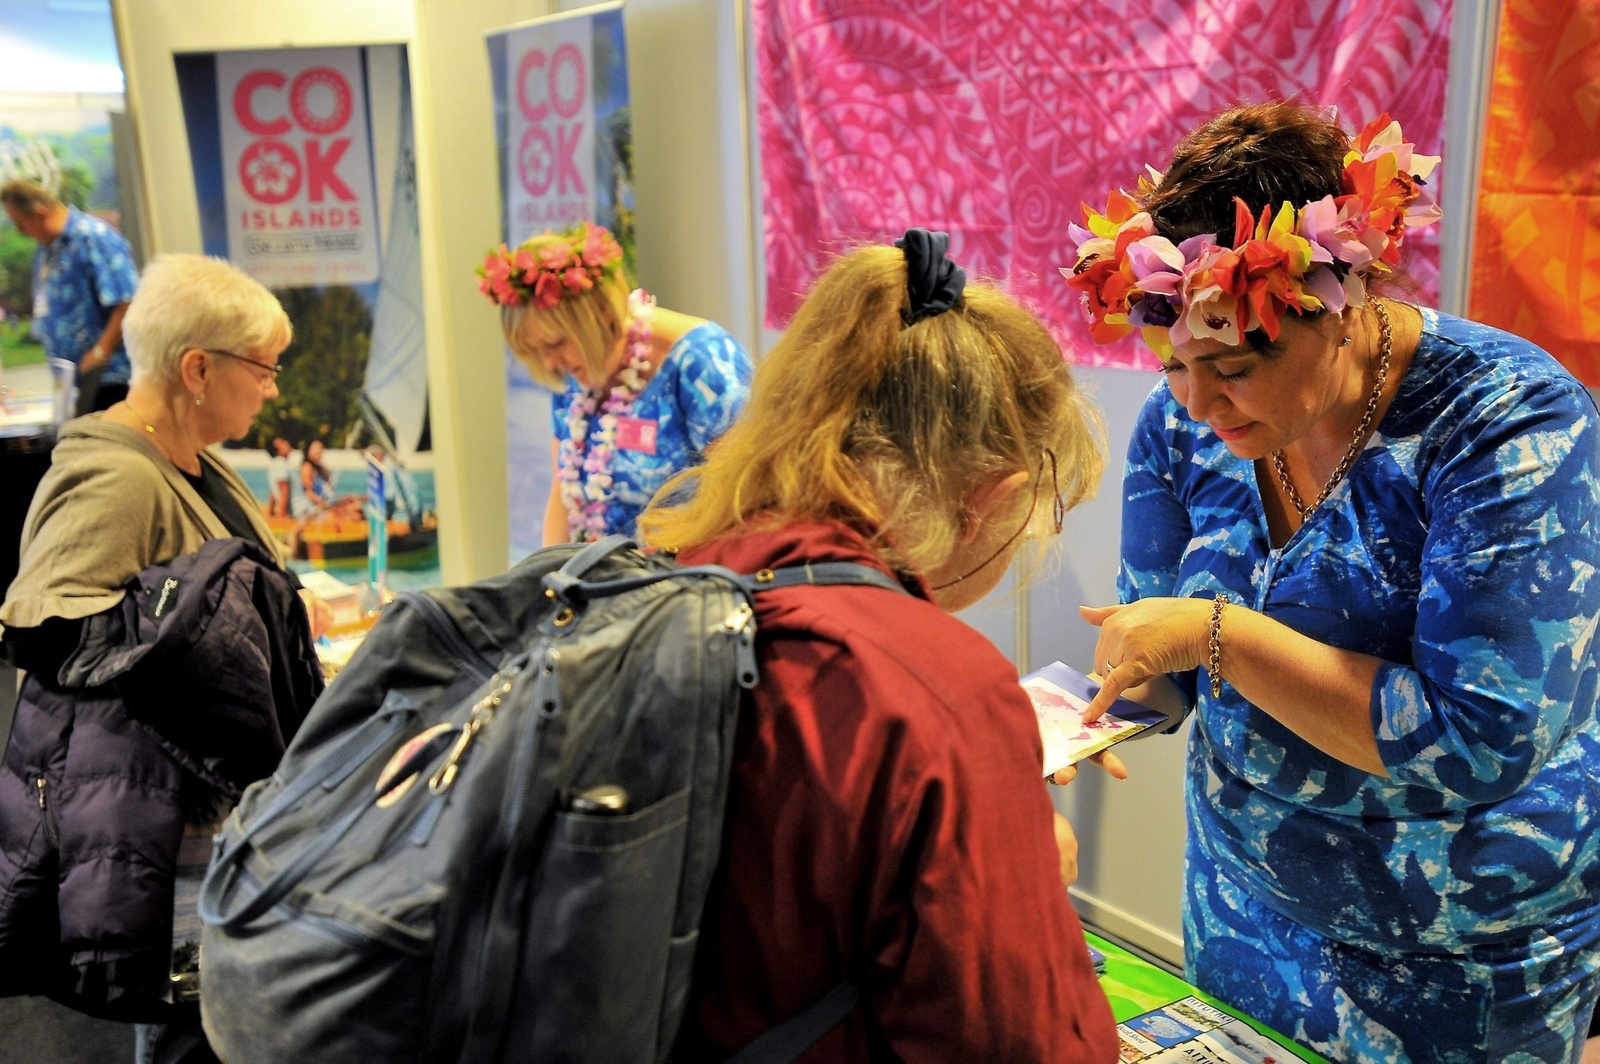 Karla Eggleton, till vänster, har rest från Cook Islands, där hon arbetar på turistbyrån. Kay Jackson är stationerad i London. Foto: Stefan Persson